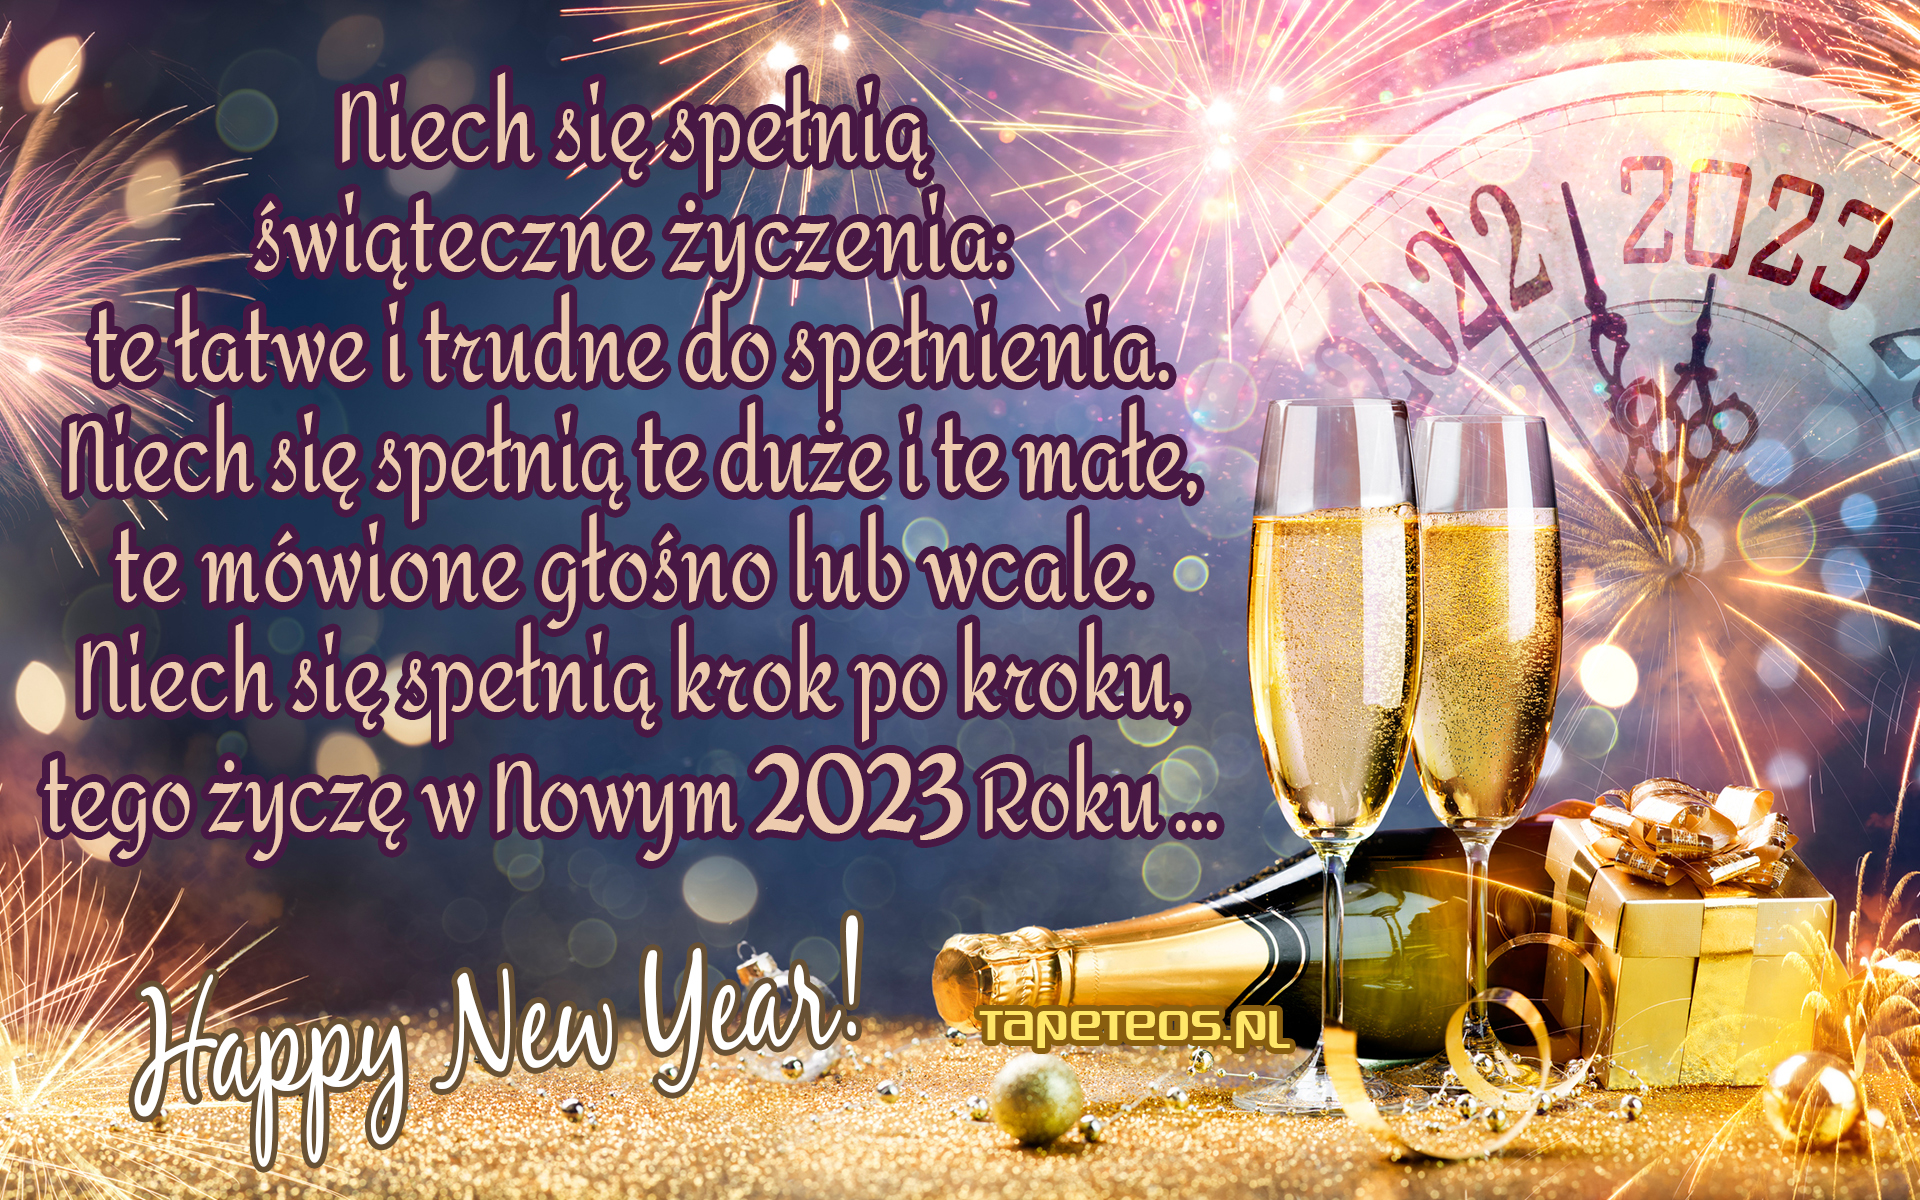 Sylwester, Nowy Rok, New Year 1177 Zyczenia, 2023 Rok, Zegar, Szampan, Niech sie spelnia ...